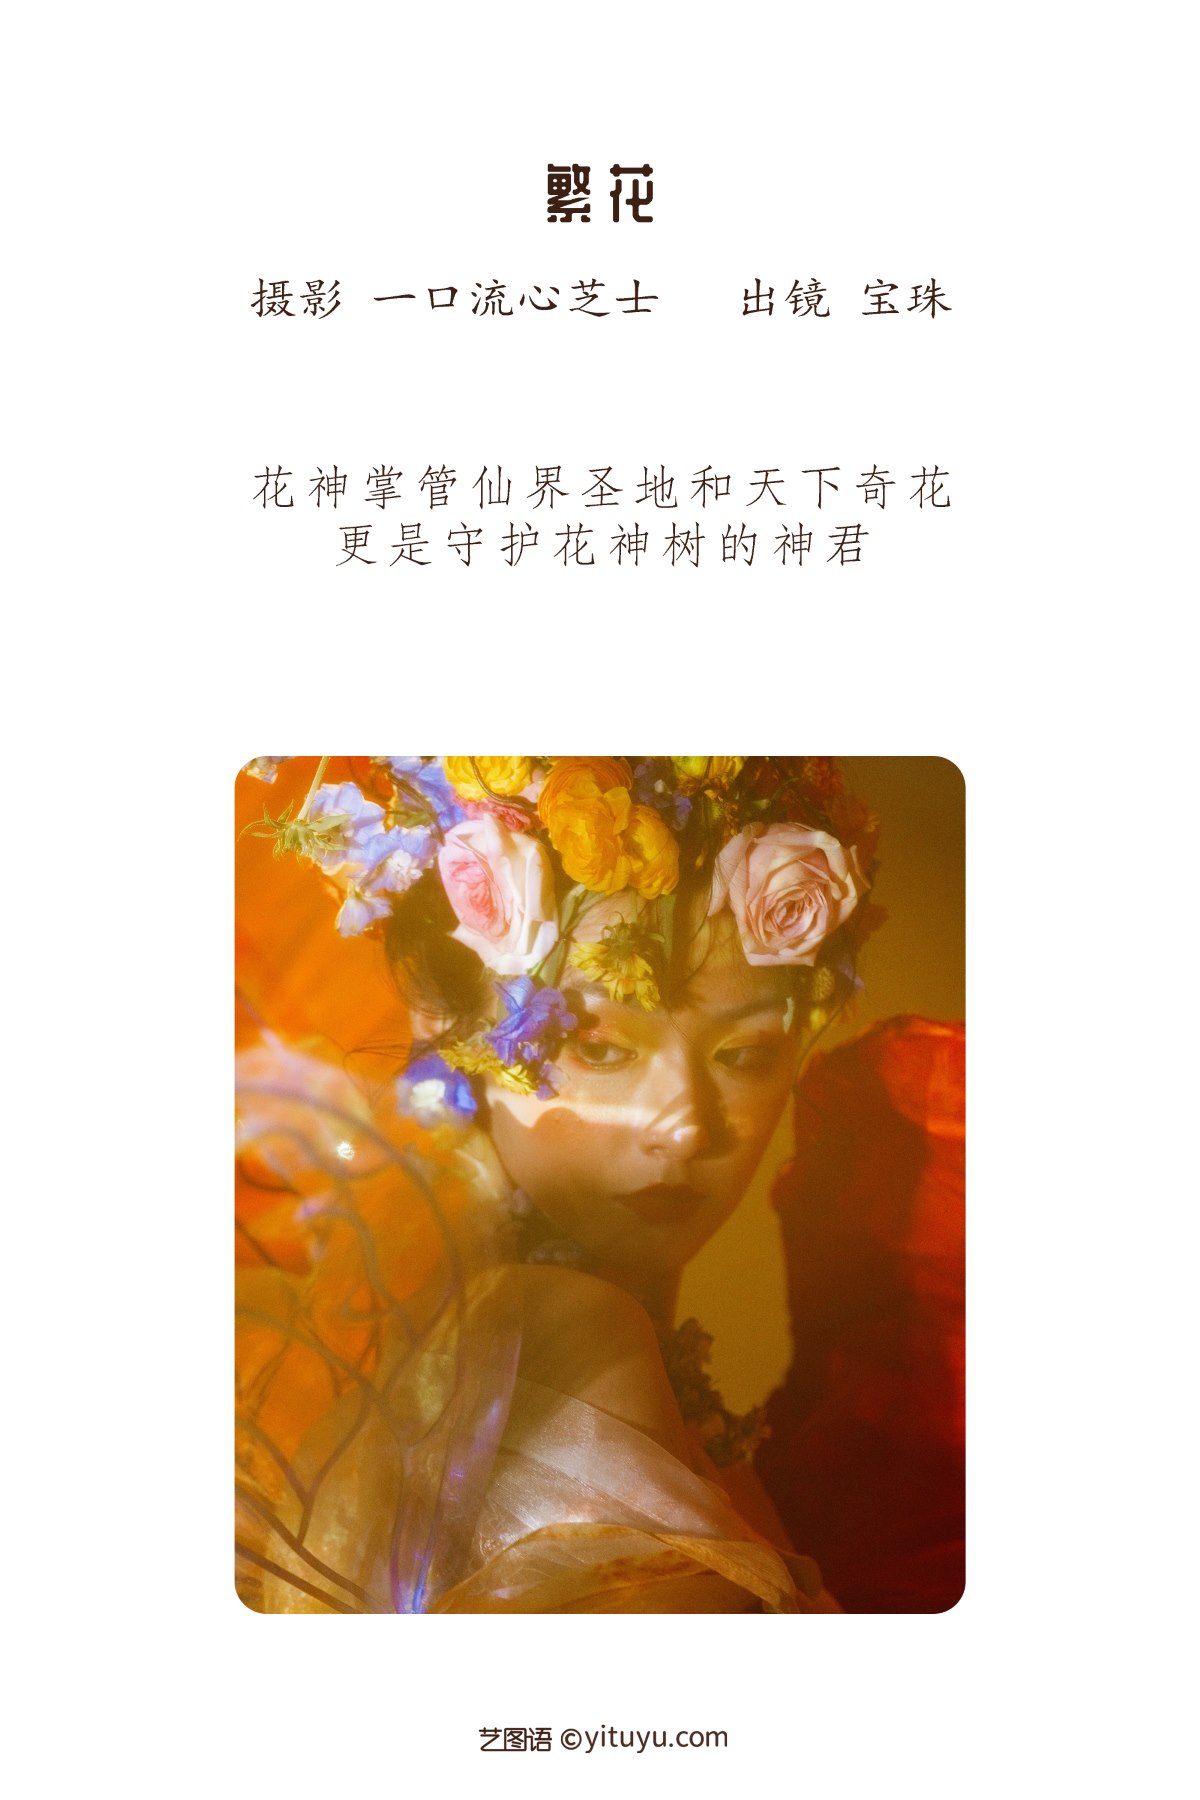 YiTuYu艺图语 Vol 2258 Bao Zhu Ne 0001 1800759760.jpg